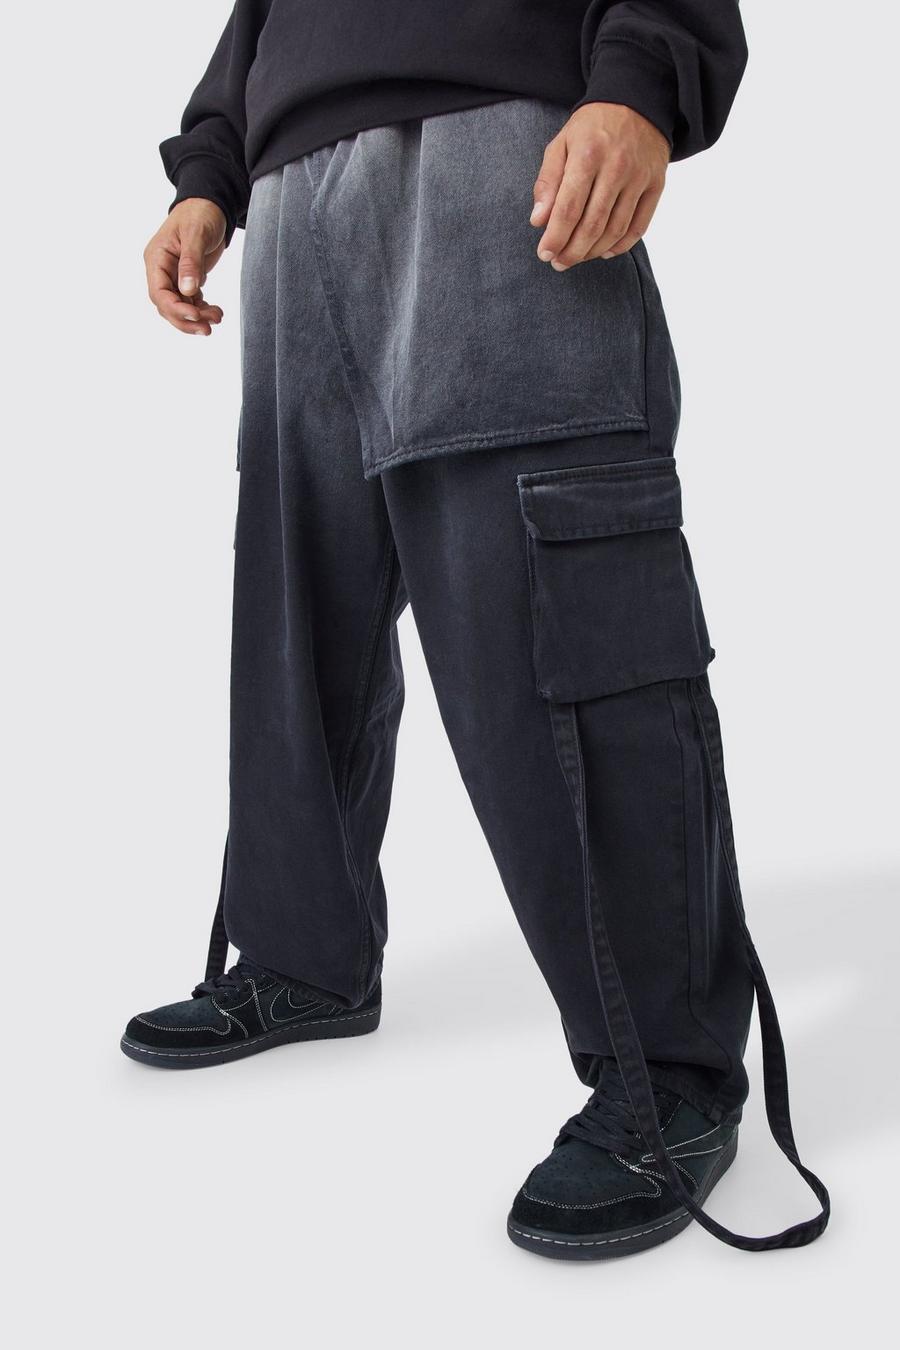 Lockere Jeans mit elastischem Bund und Farbverlauf, Black